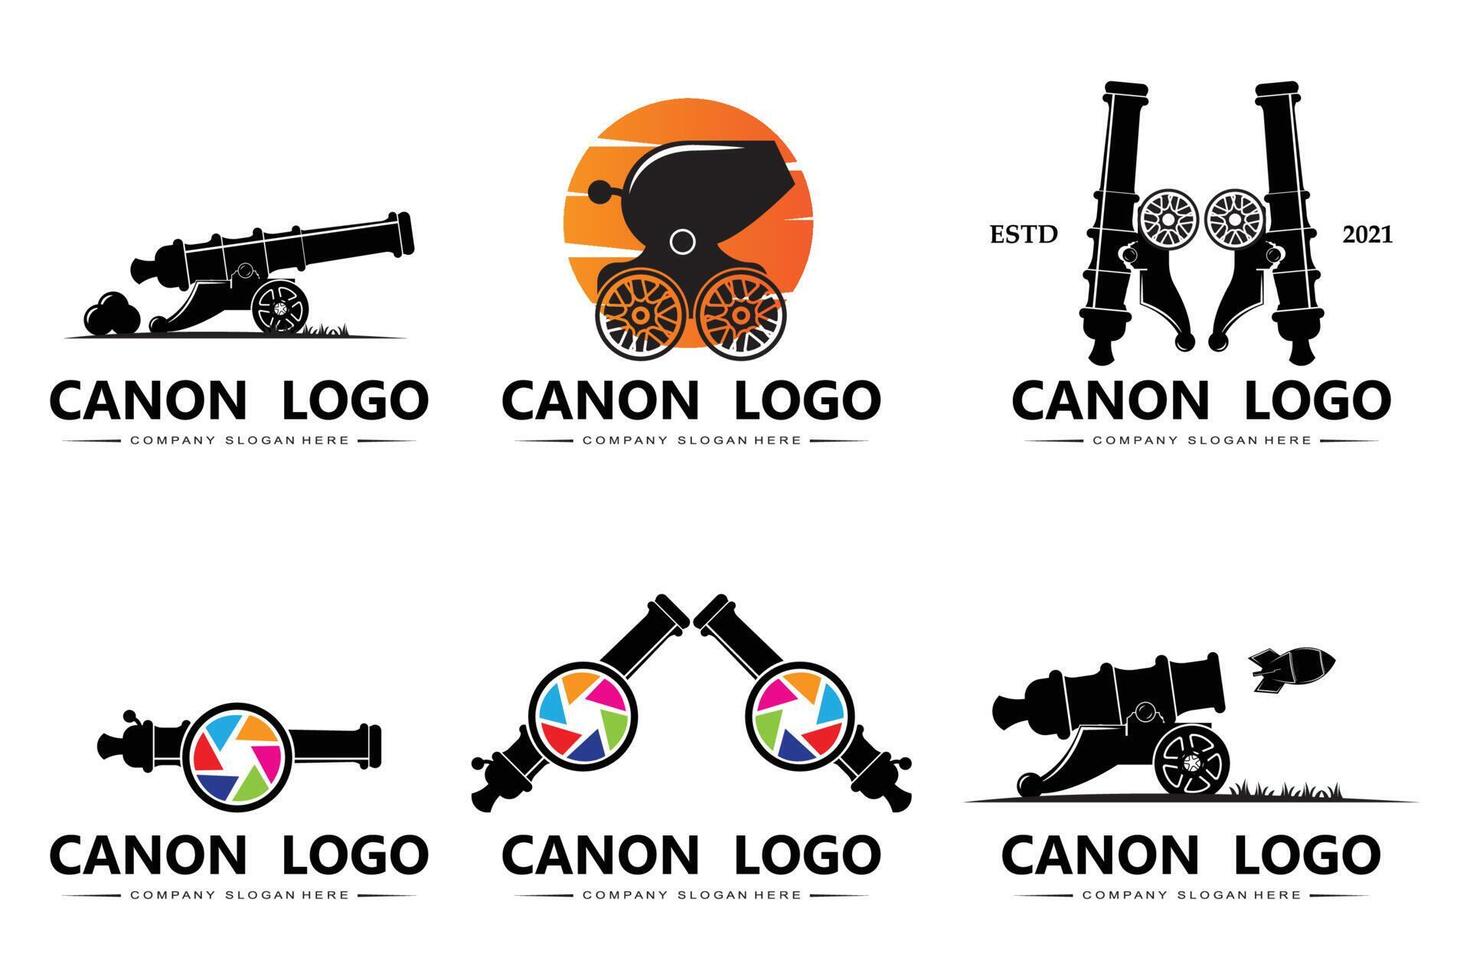 icône vectorielle du logo du canon, arme de guerre de l'armée, bombe, engin explosif, garde royale, vintage rétro vecteur